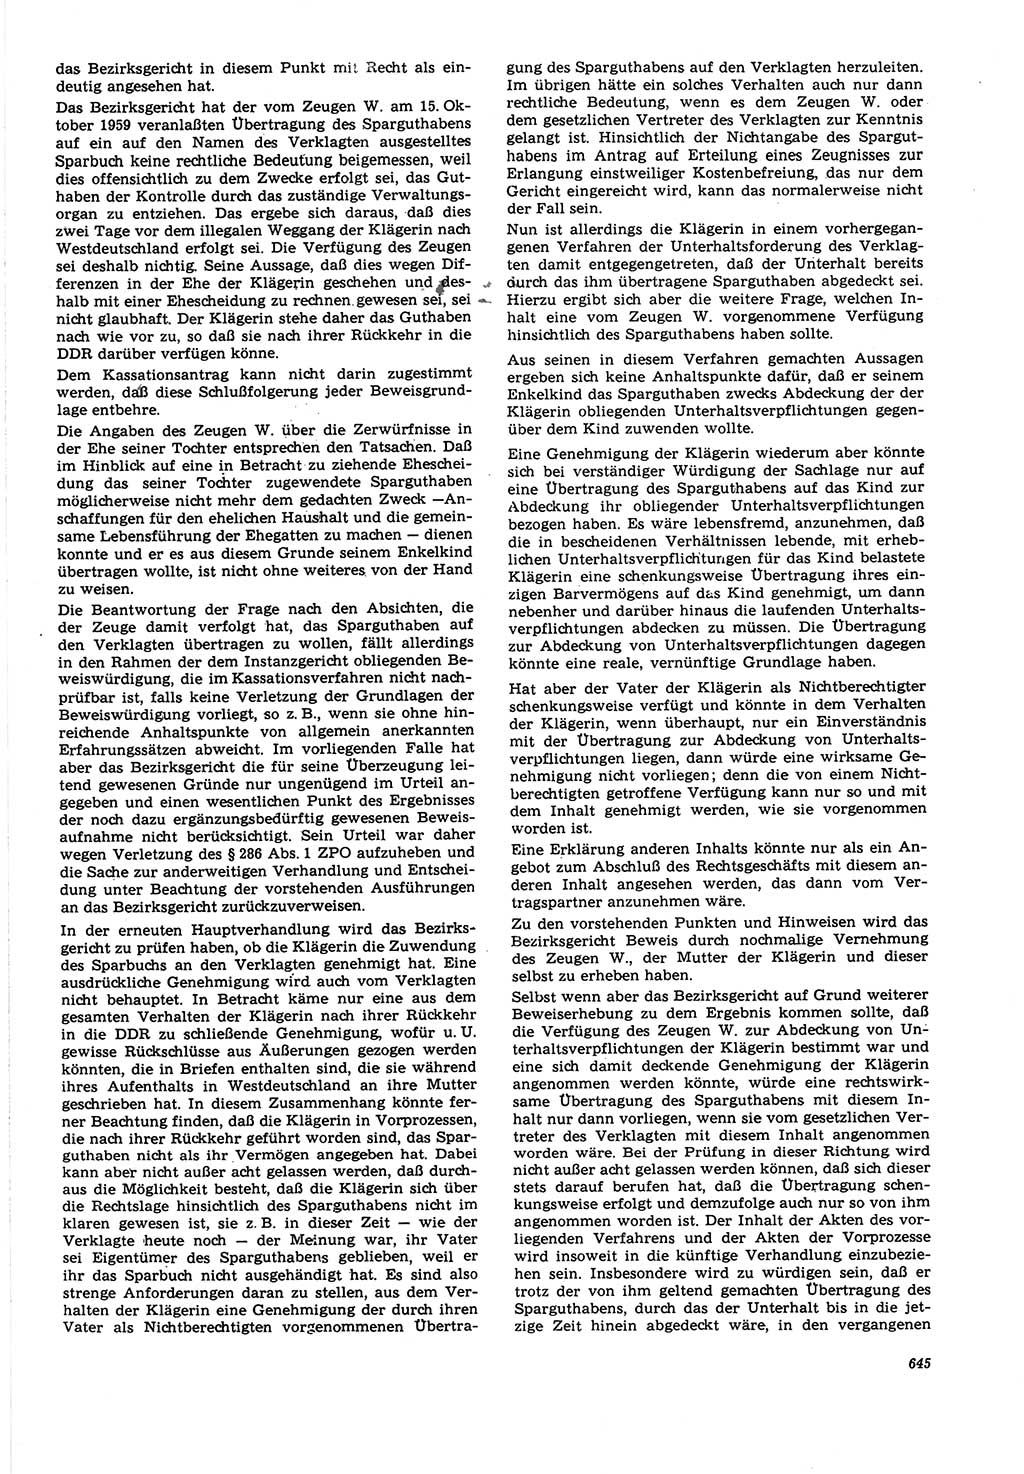 Neue Justiz (NJ), Zeitschrift für Recht und Rechtswissenschaft [Deutsche Demokratische Republik (DDR)], 21. Jahrgang 1967, Seite 645 (NJ DDR 1967, S. 645)